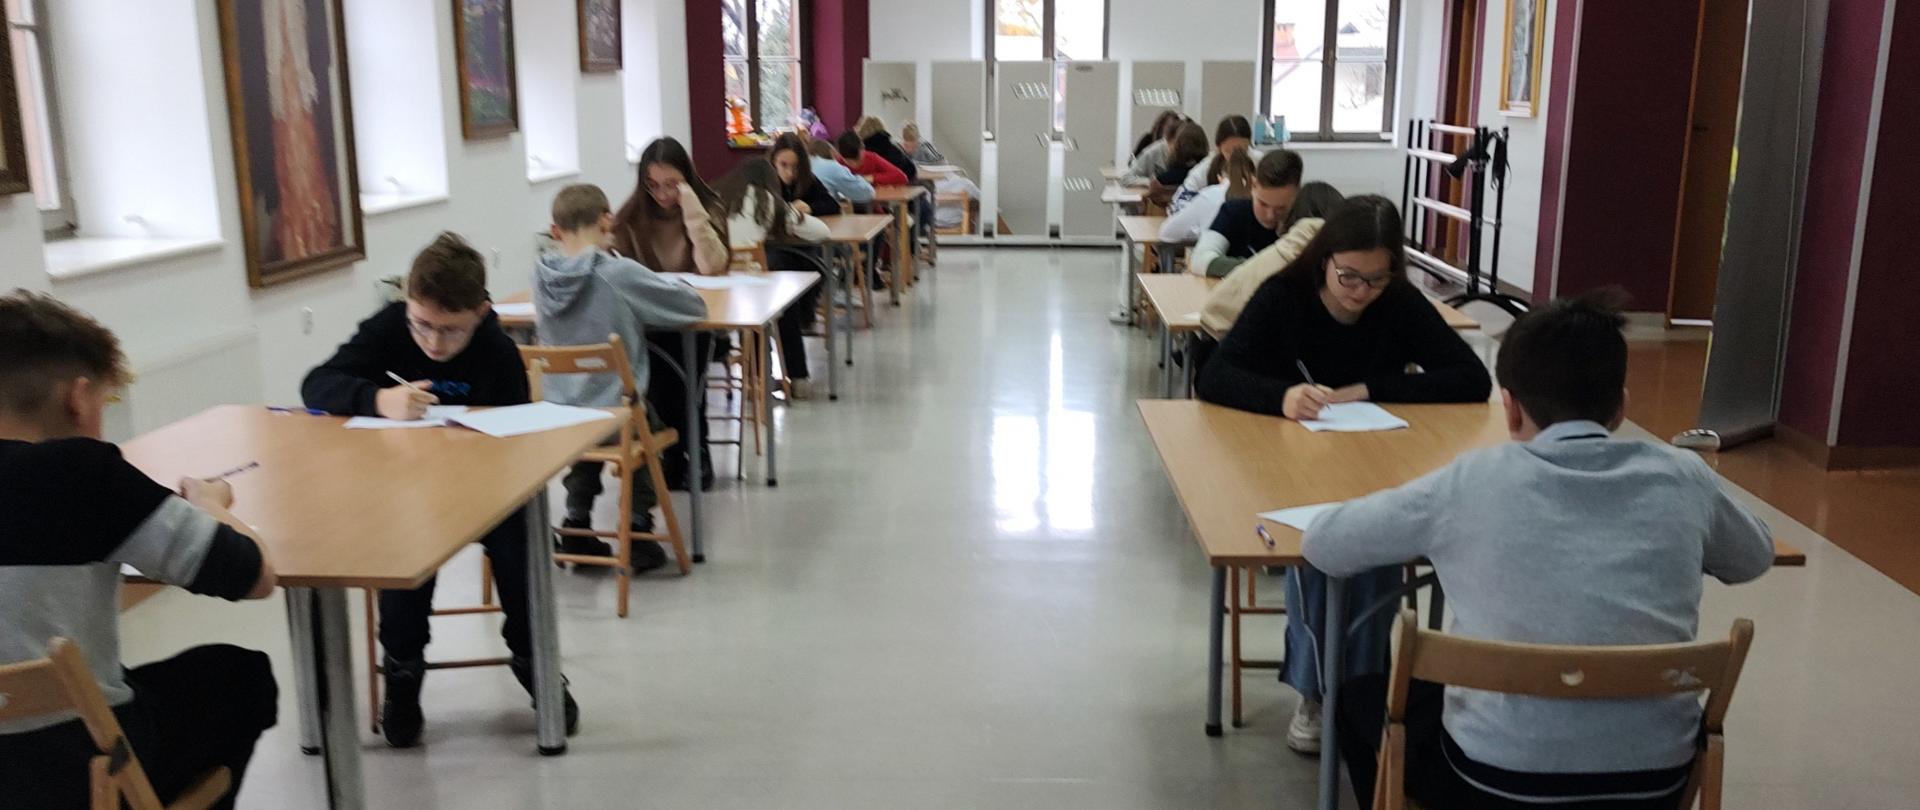 Na dużej sali uczniowie siedzą przy stolikach i rozwiązują pisemny test 